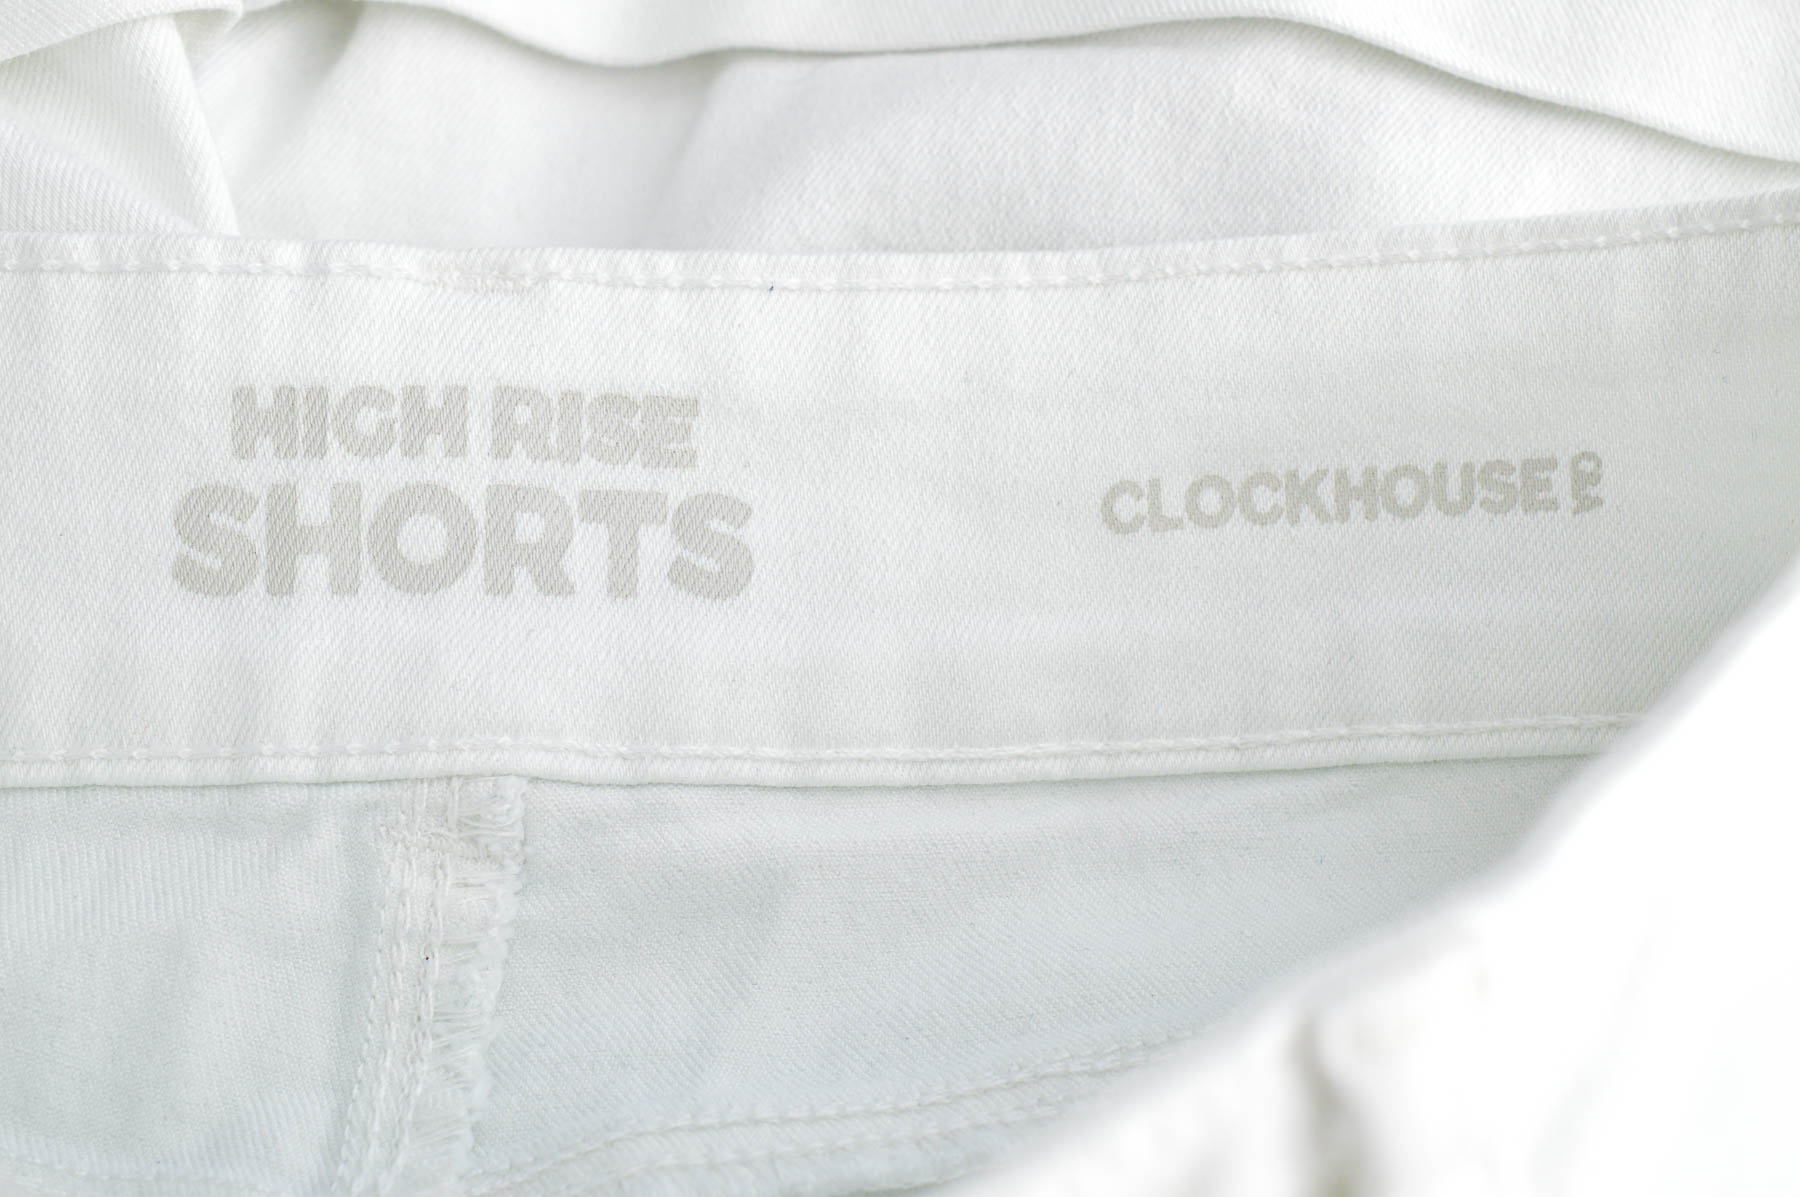 Pantaloni scurți bărbați - Clockhouse - 2